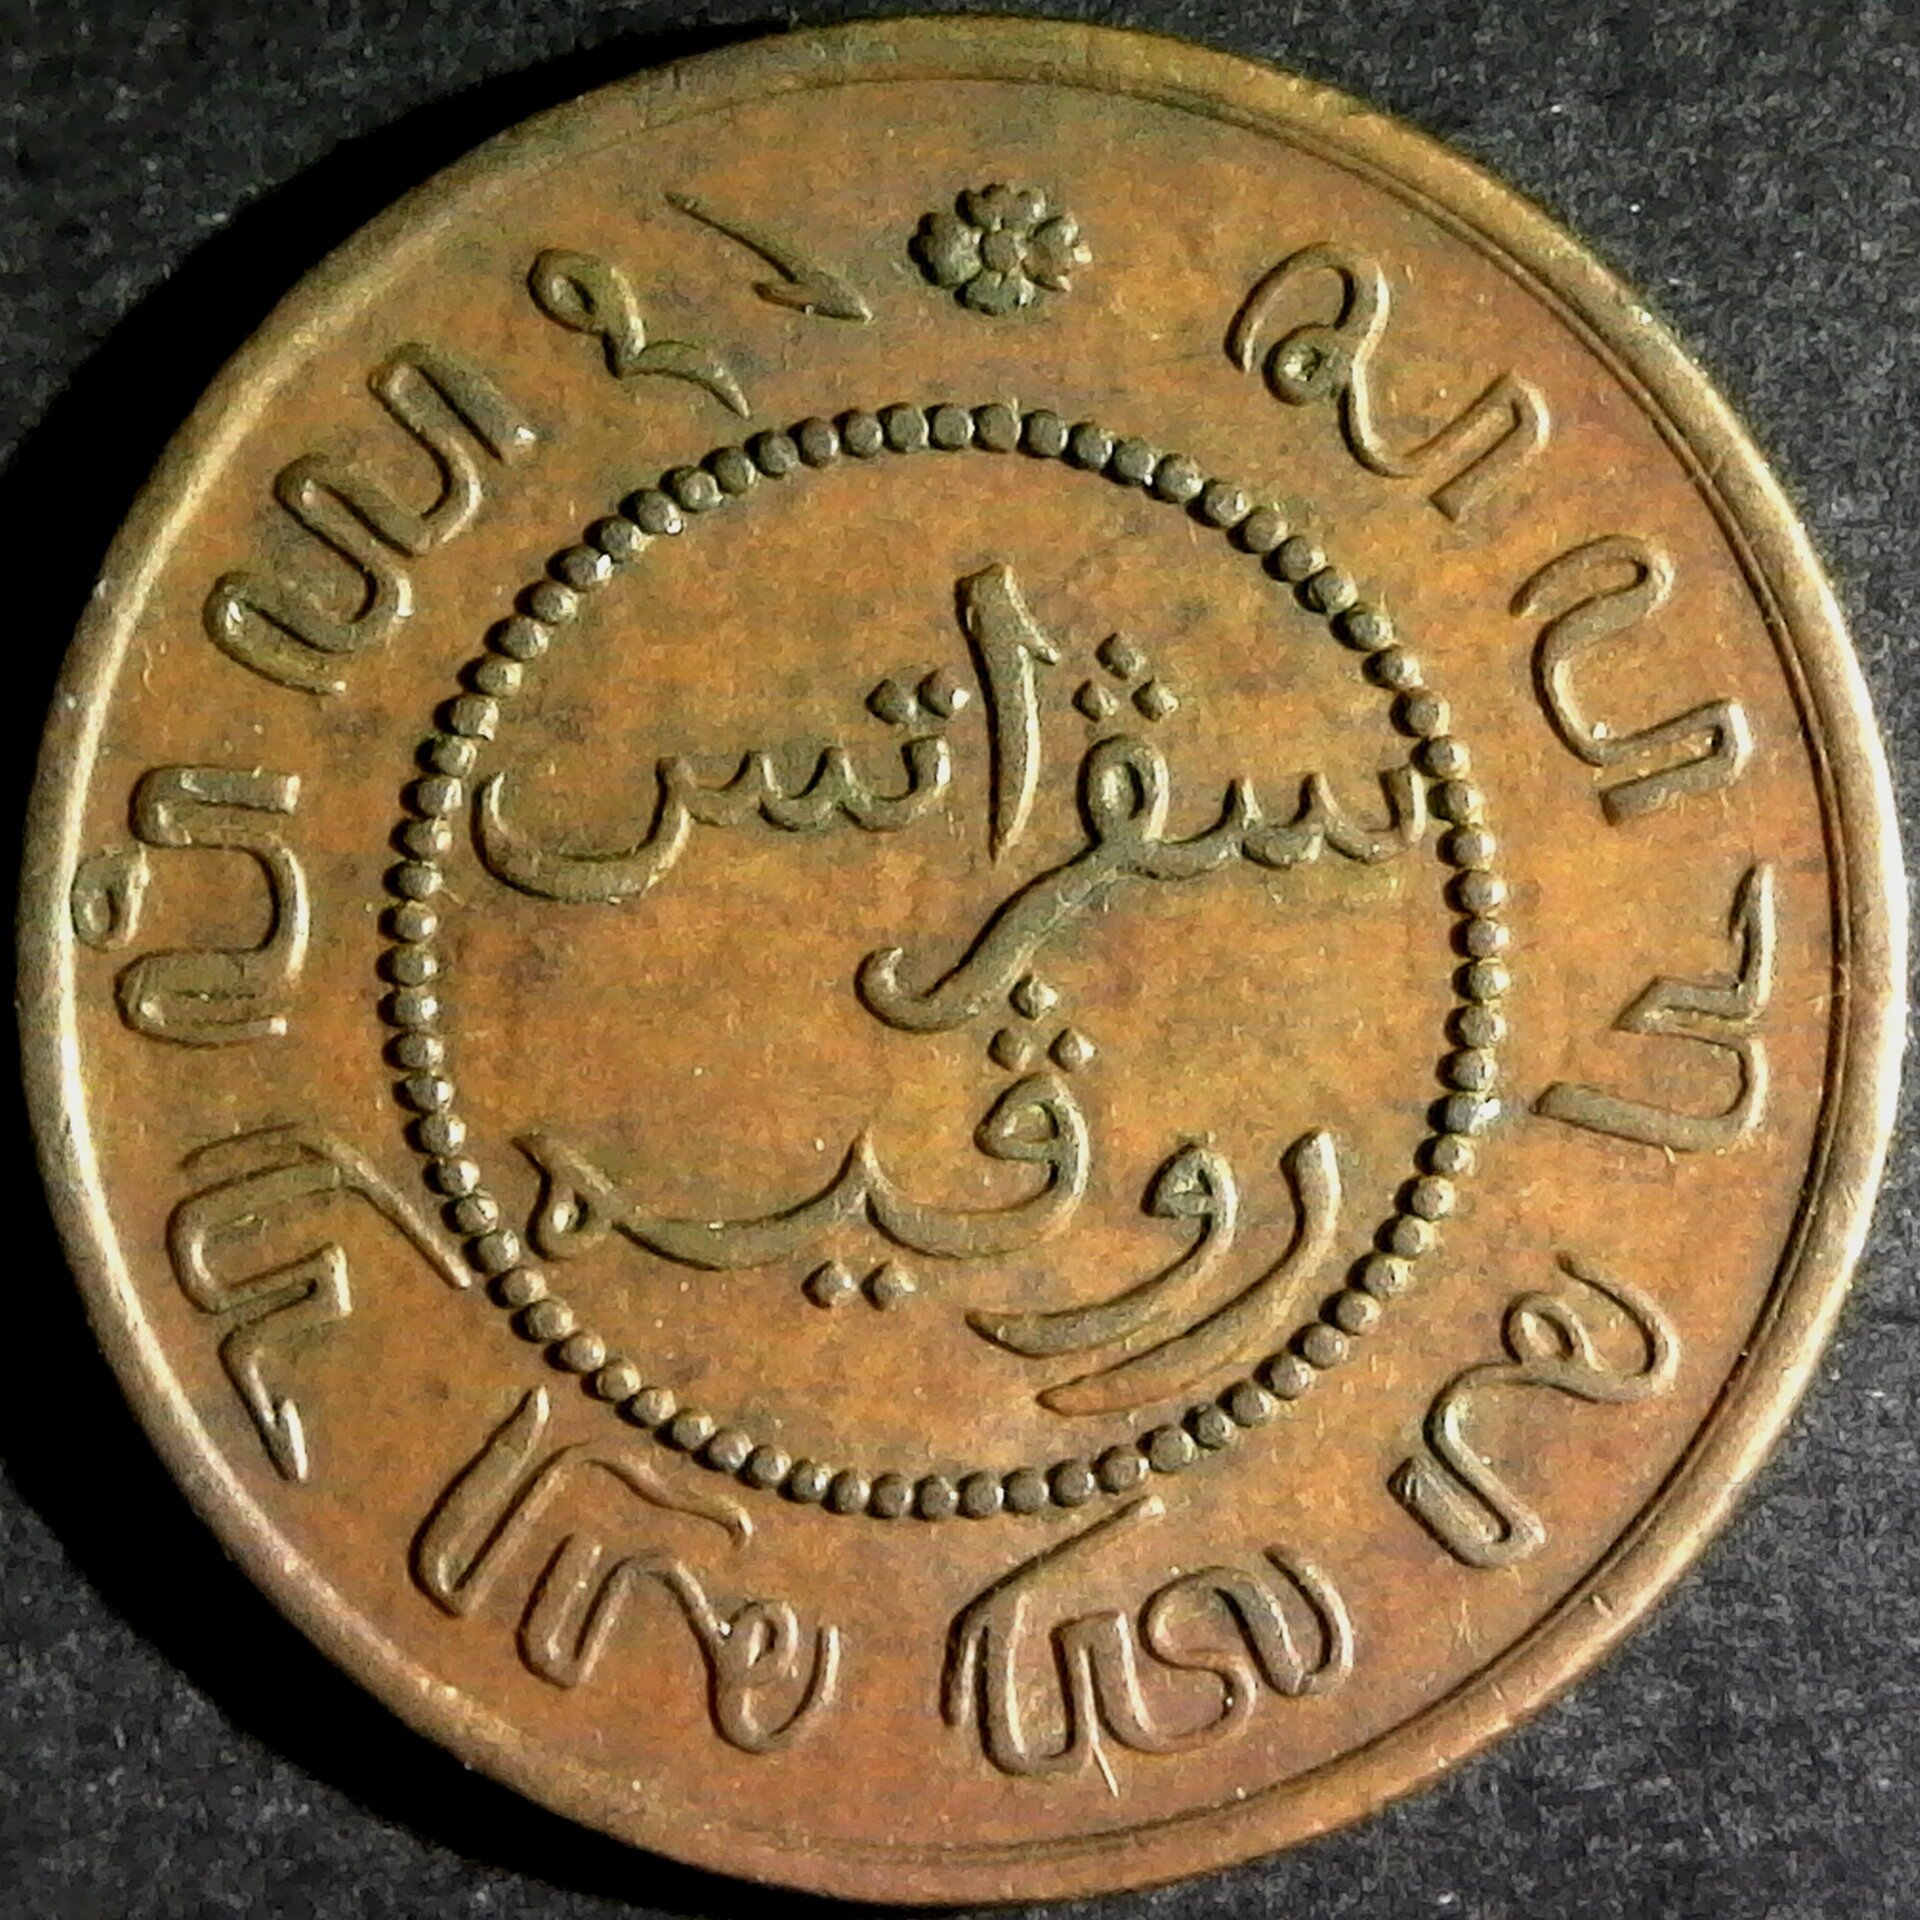 Netherlands East Indies 1 Cent 1857 rev.jpg